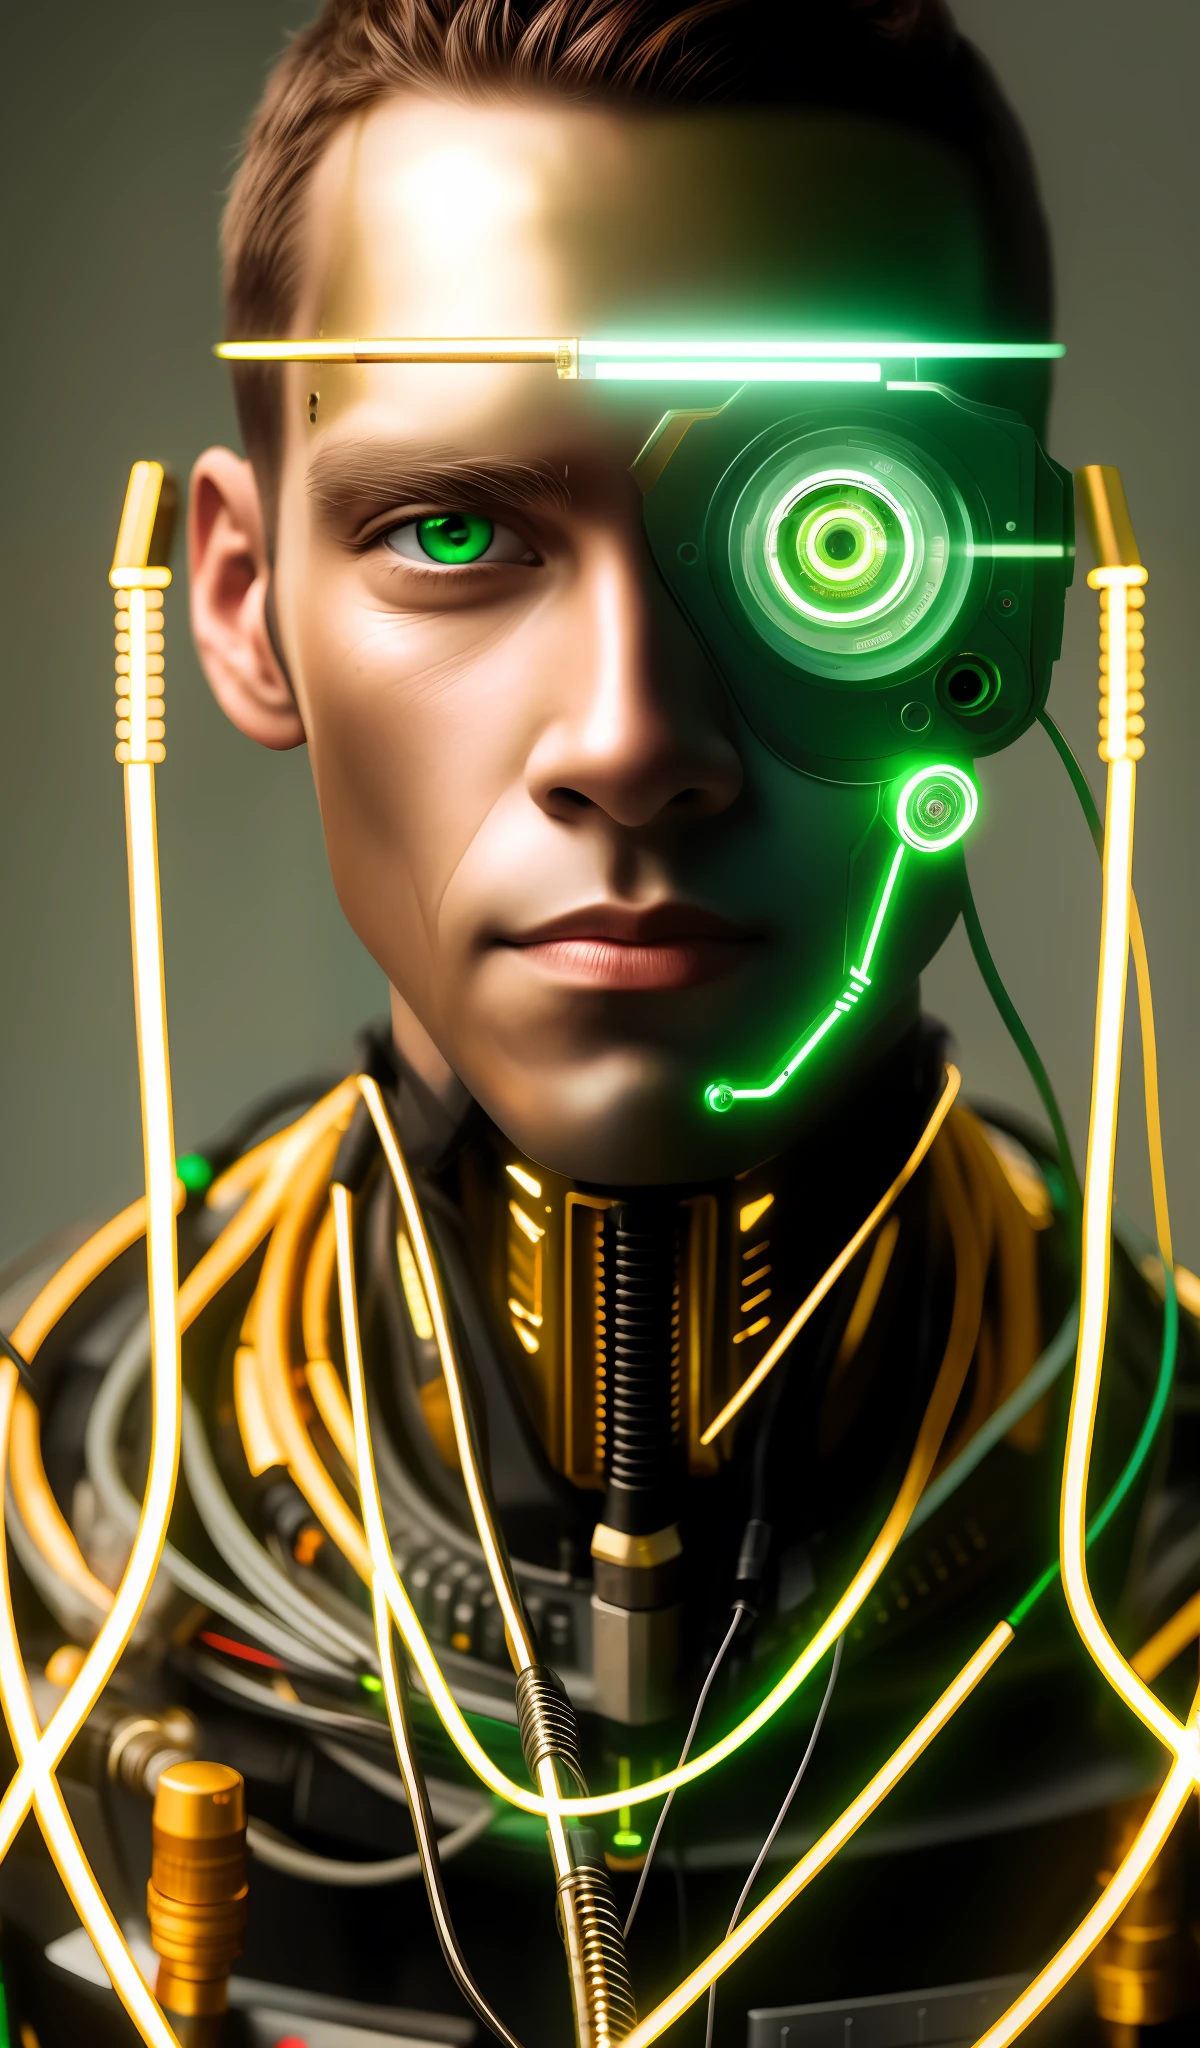 机器人中景, 绿眼睛, 工作服, 模特脸, 裸露的电线, 从生锈的电线中流出的金油